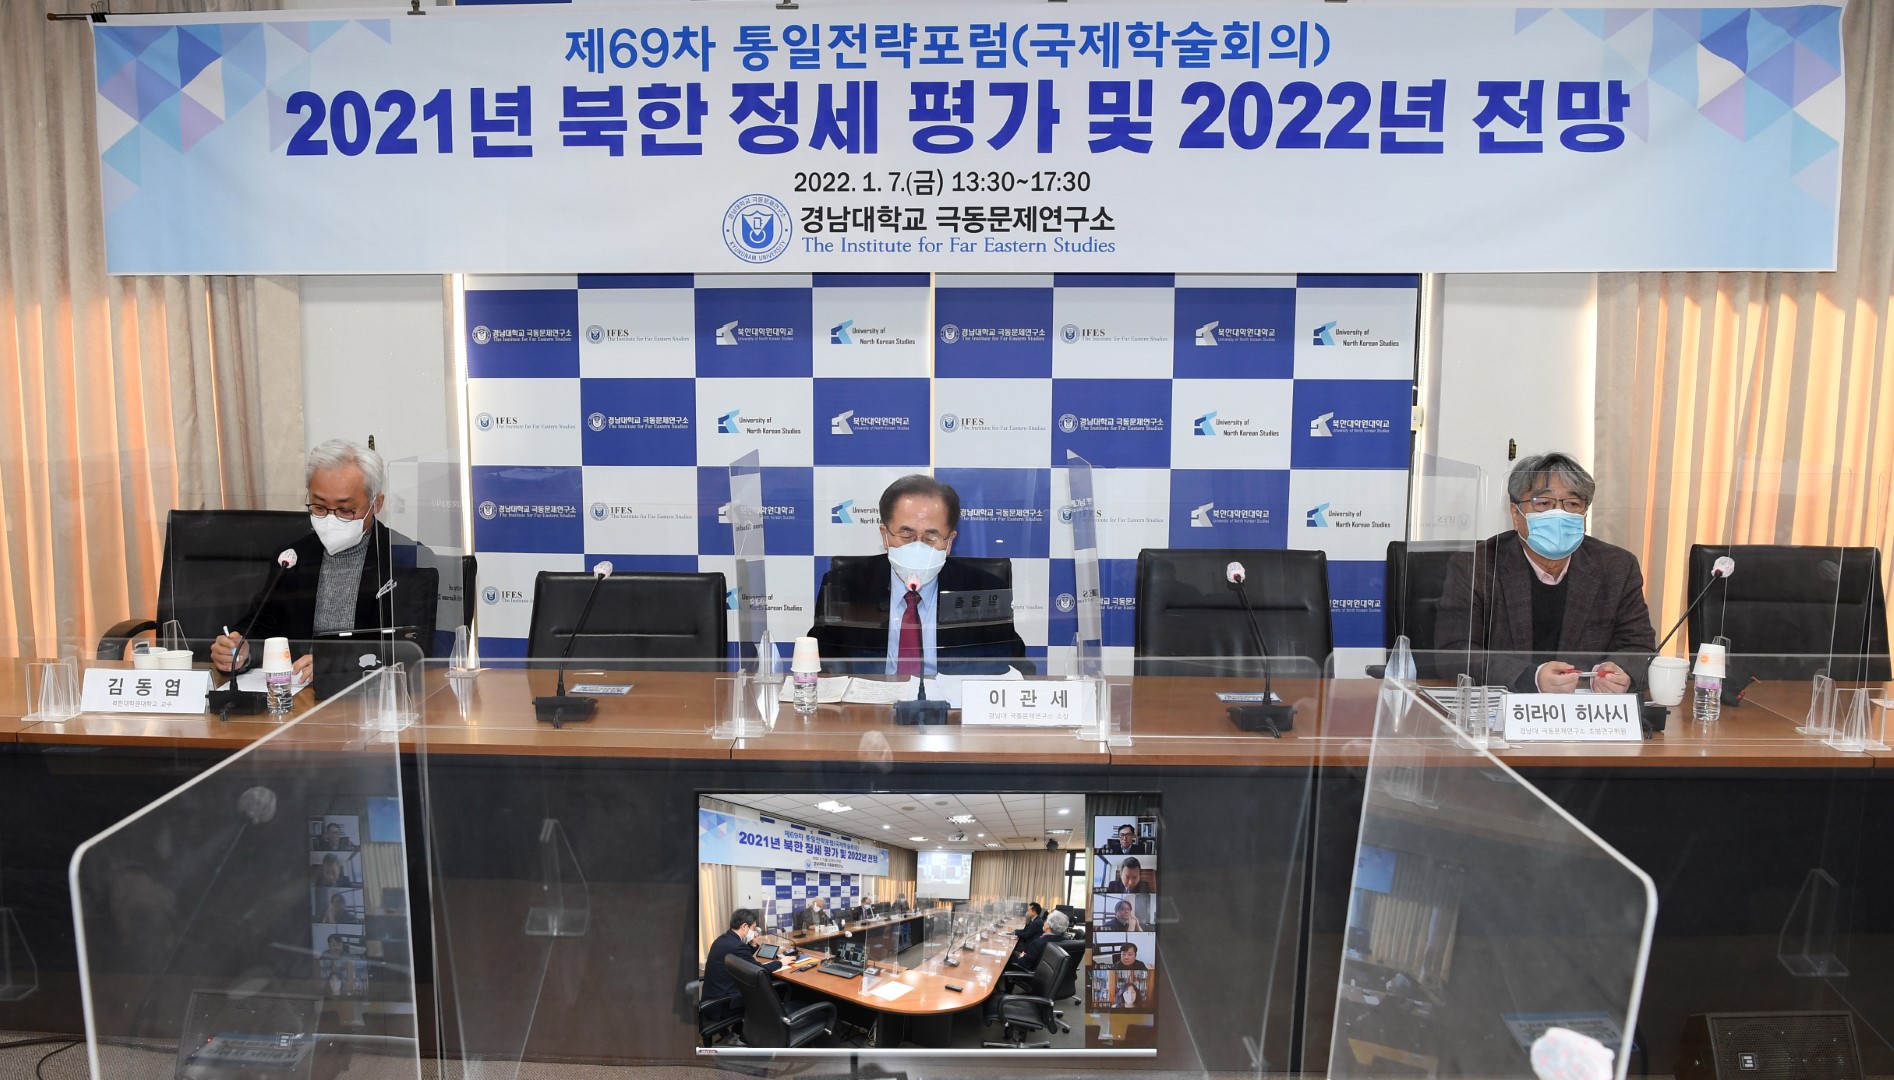 경남대 극동문제연구소, “2021년 북한 정세 평가 및 2022년   전망”을 주제로 『제69차 통일전략포럼(국제학술회의)』개최   대표이미지